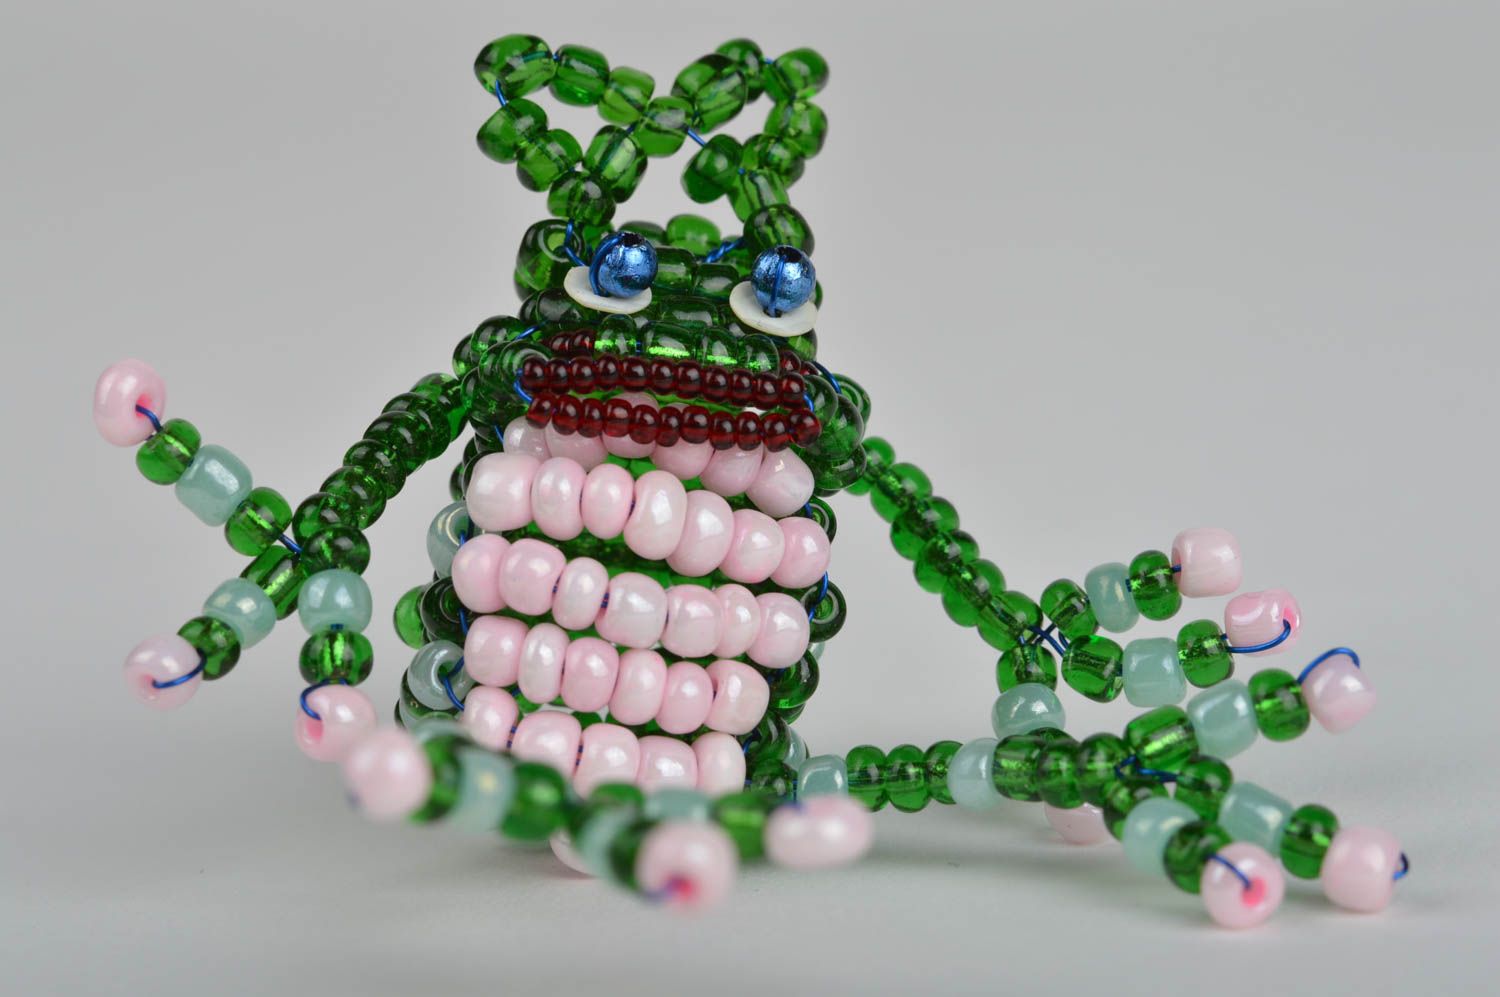 Пальчиковая игрушка лягушка зеленая забавная из китайского бисера ручной работы фото 3